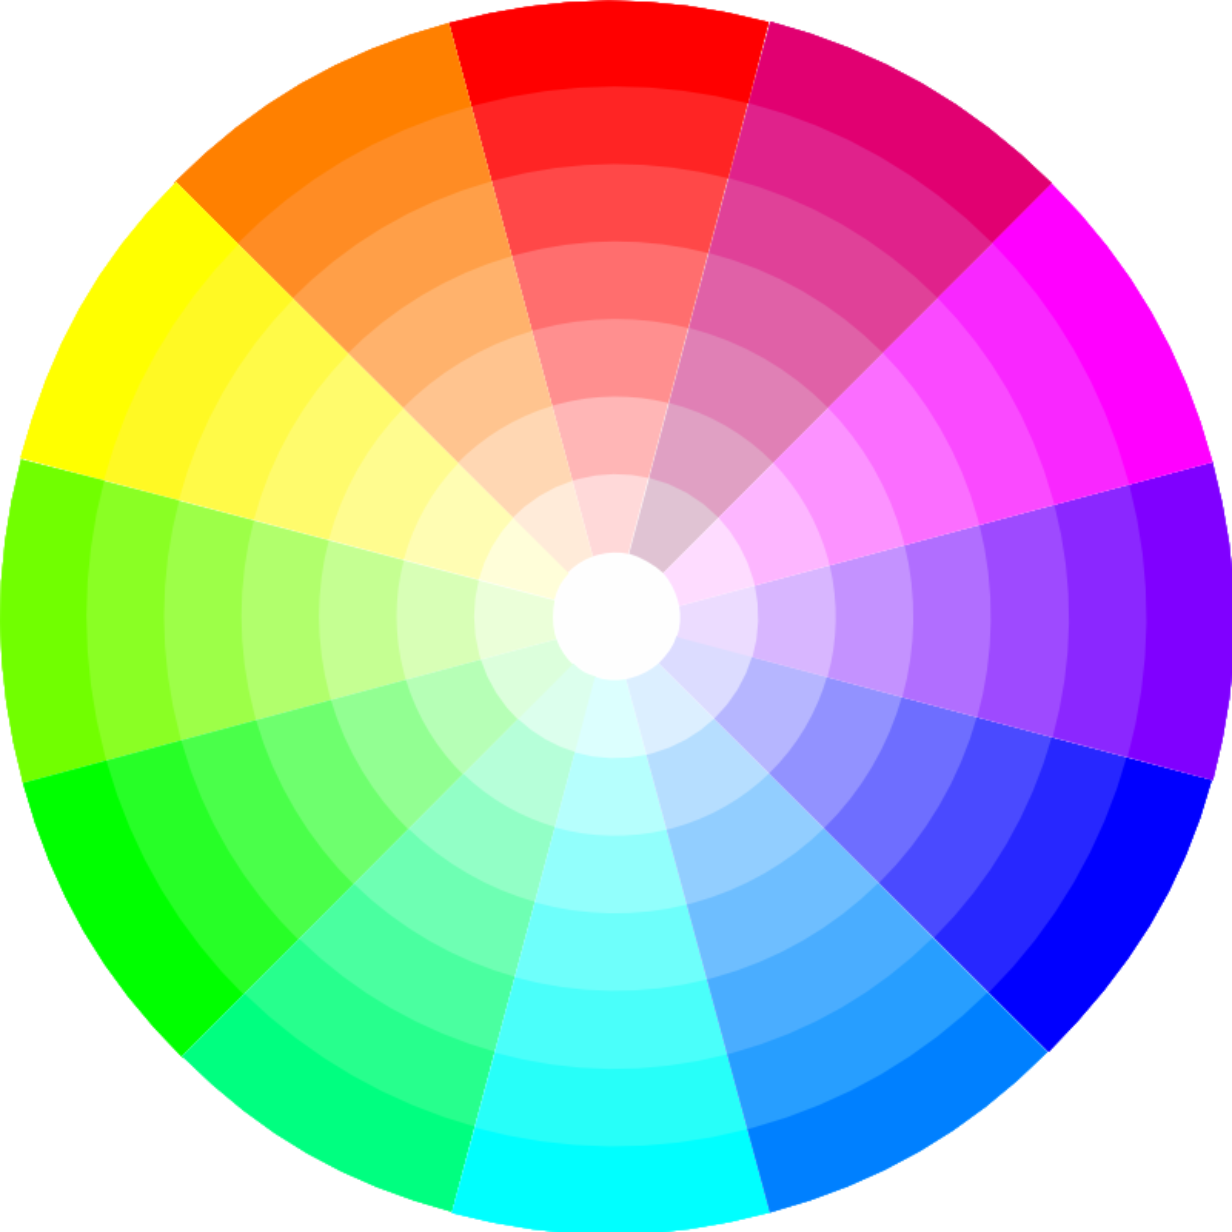 Гамма цветов. Цветовой круг. Цветная палитра. Цветовое колесо. Наличие цветной